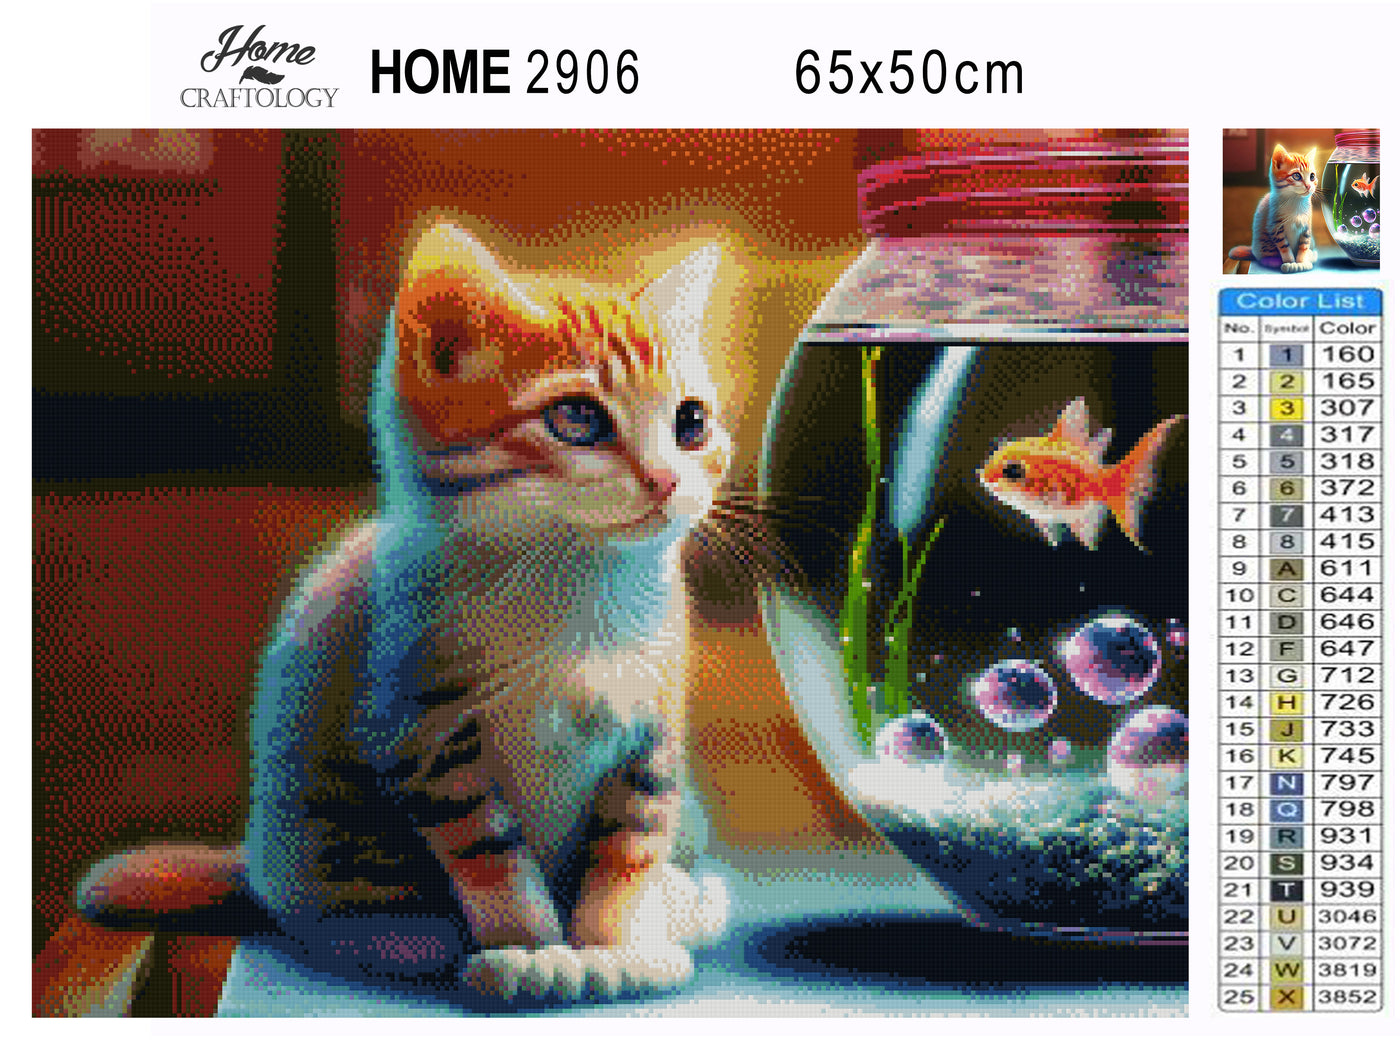 Cat and Fish - Premium Diamond Painting Kit